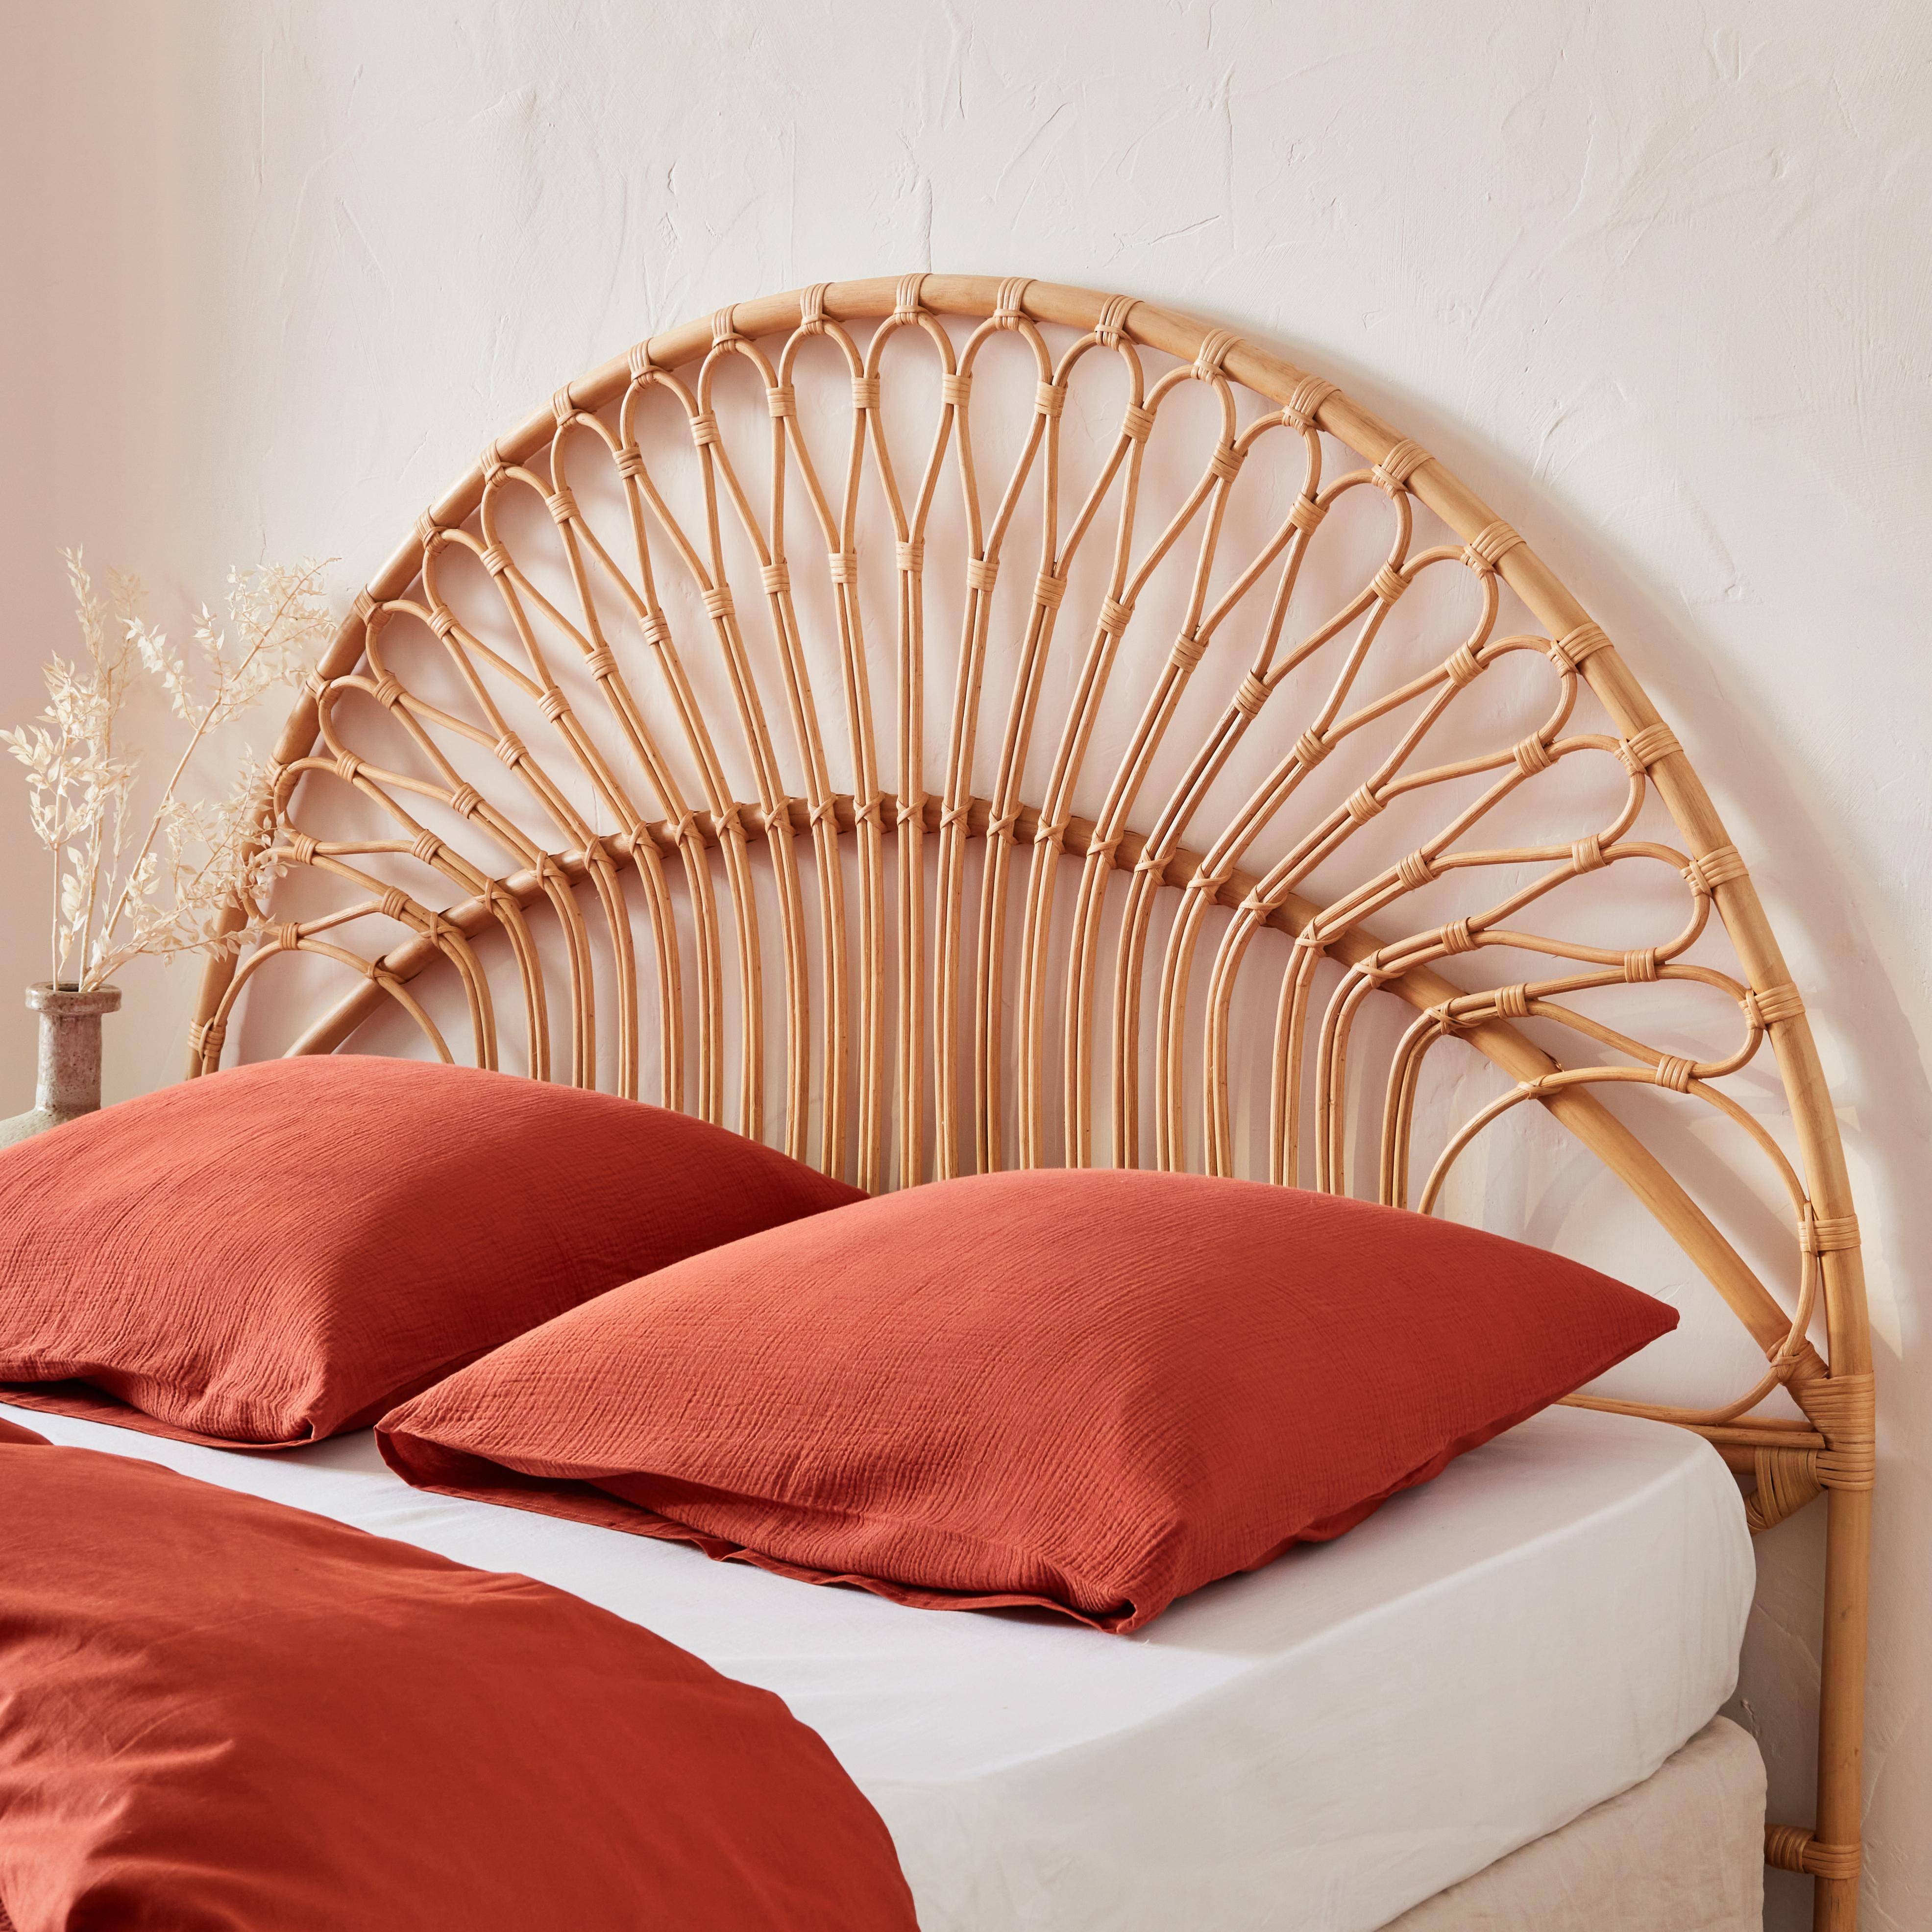 Tête de lit en rotin naturel compatible avec les lits d'une largeur de 160cm, L 160 x P3 x H130cm Photo1